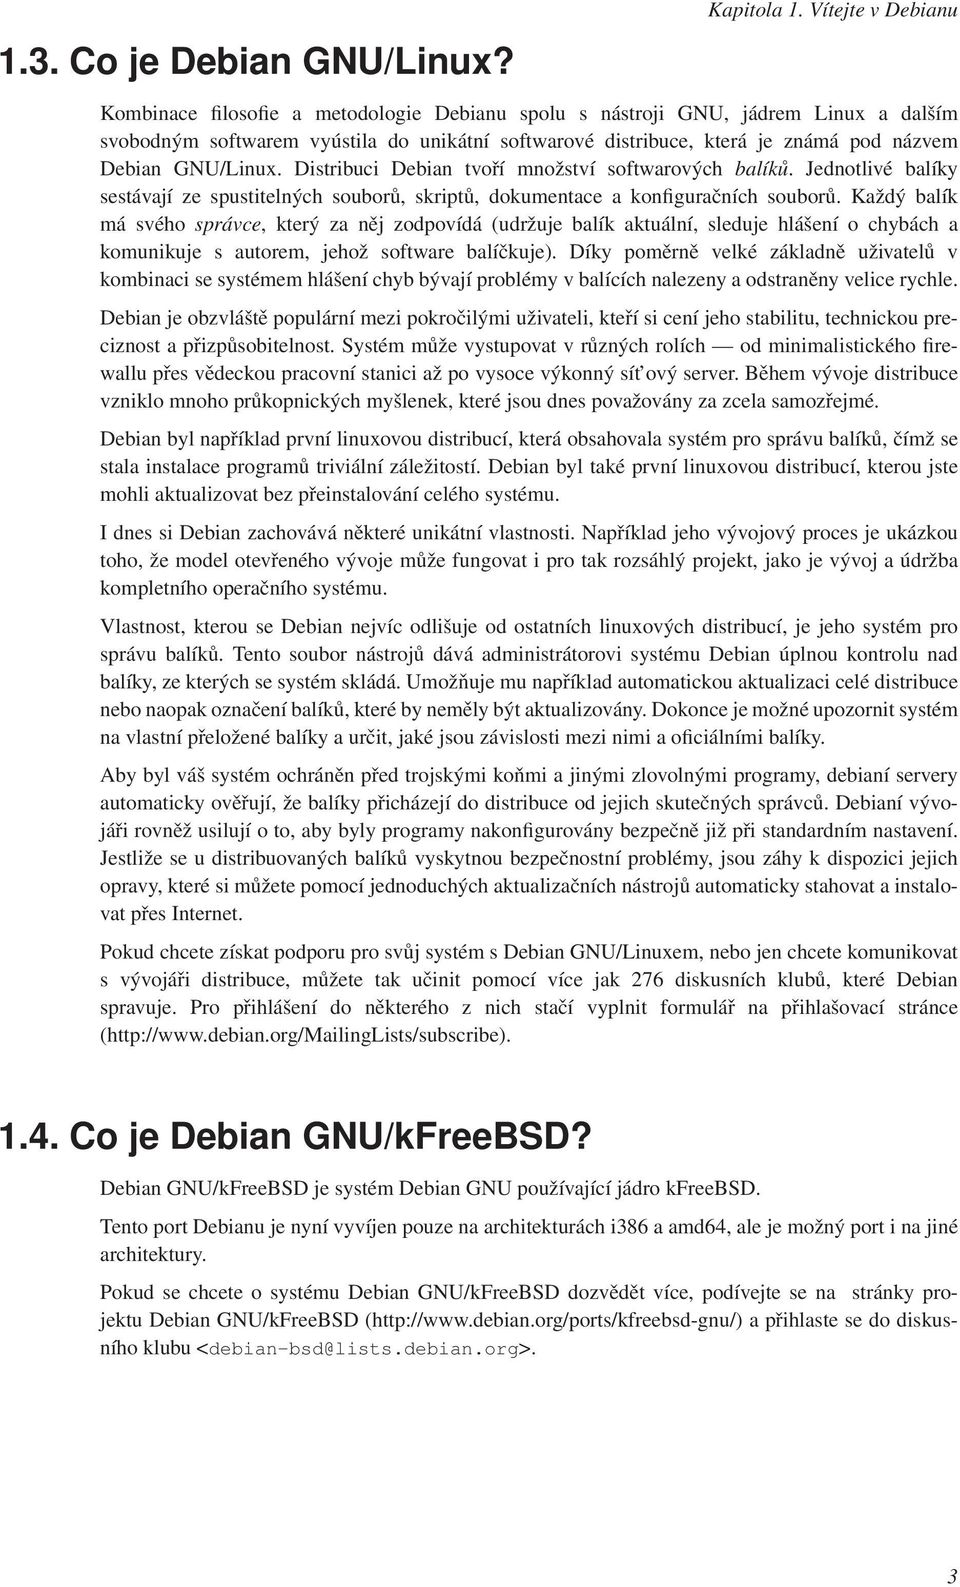 Debian GNU/Linux. Distribuci Debian tvoří množství softwarových balíků. Jednotlivé balíky sestávají ze spustitelných souborů, skriptů, dokumentace a konfiguračních souborů.